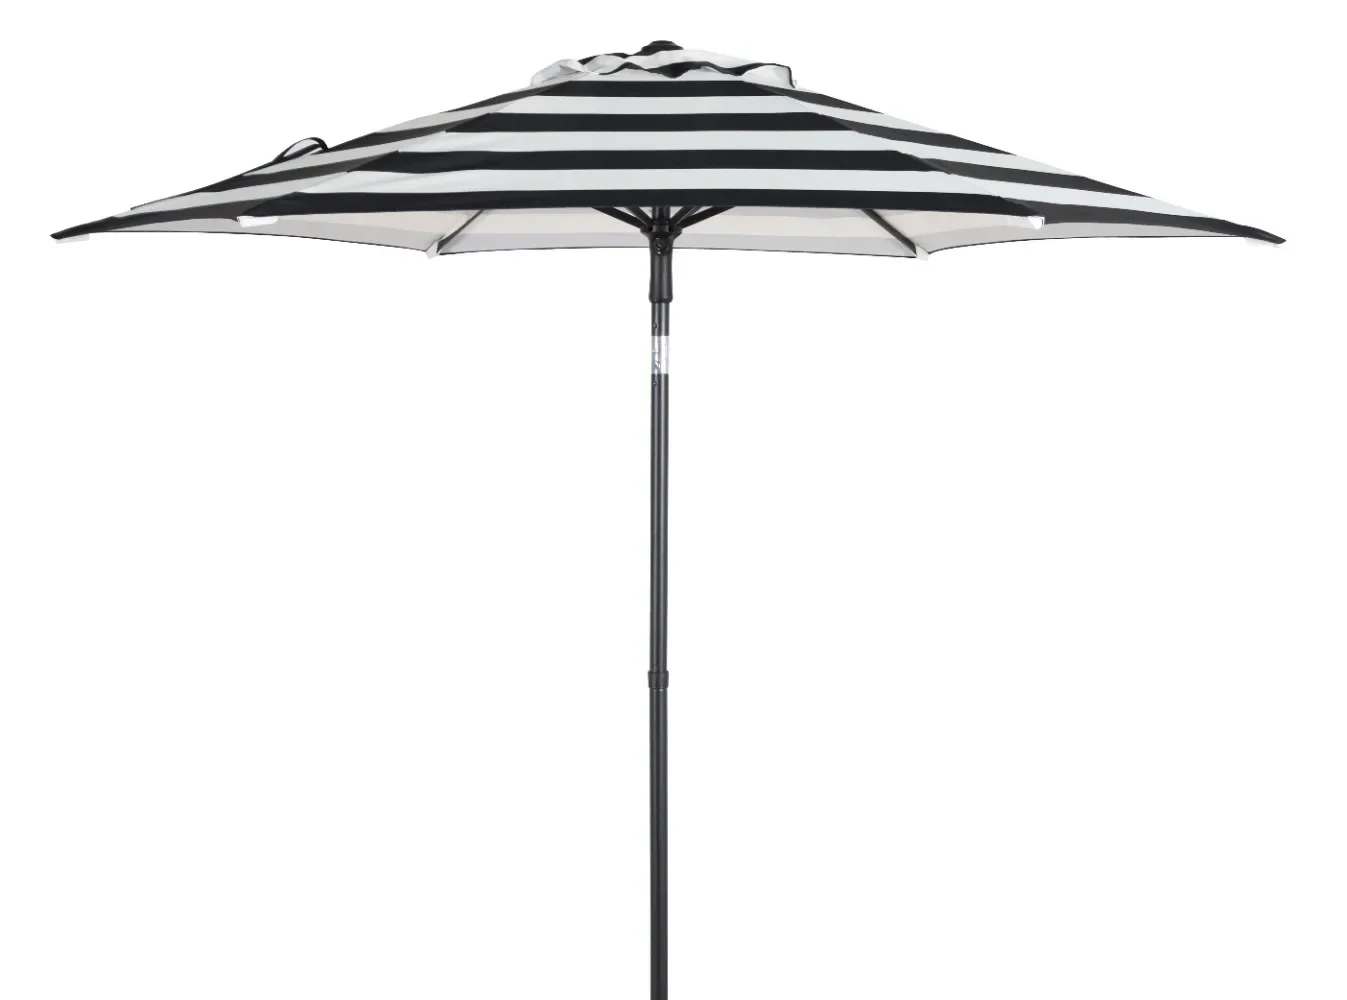 

7.5 Foot Push-Up Round Market Umbrella Black & White Cabana Stripe Outdoor Furniture Patio Umbrellas